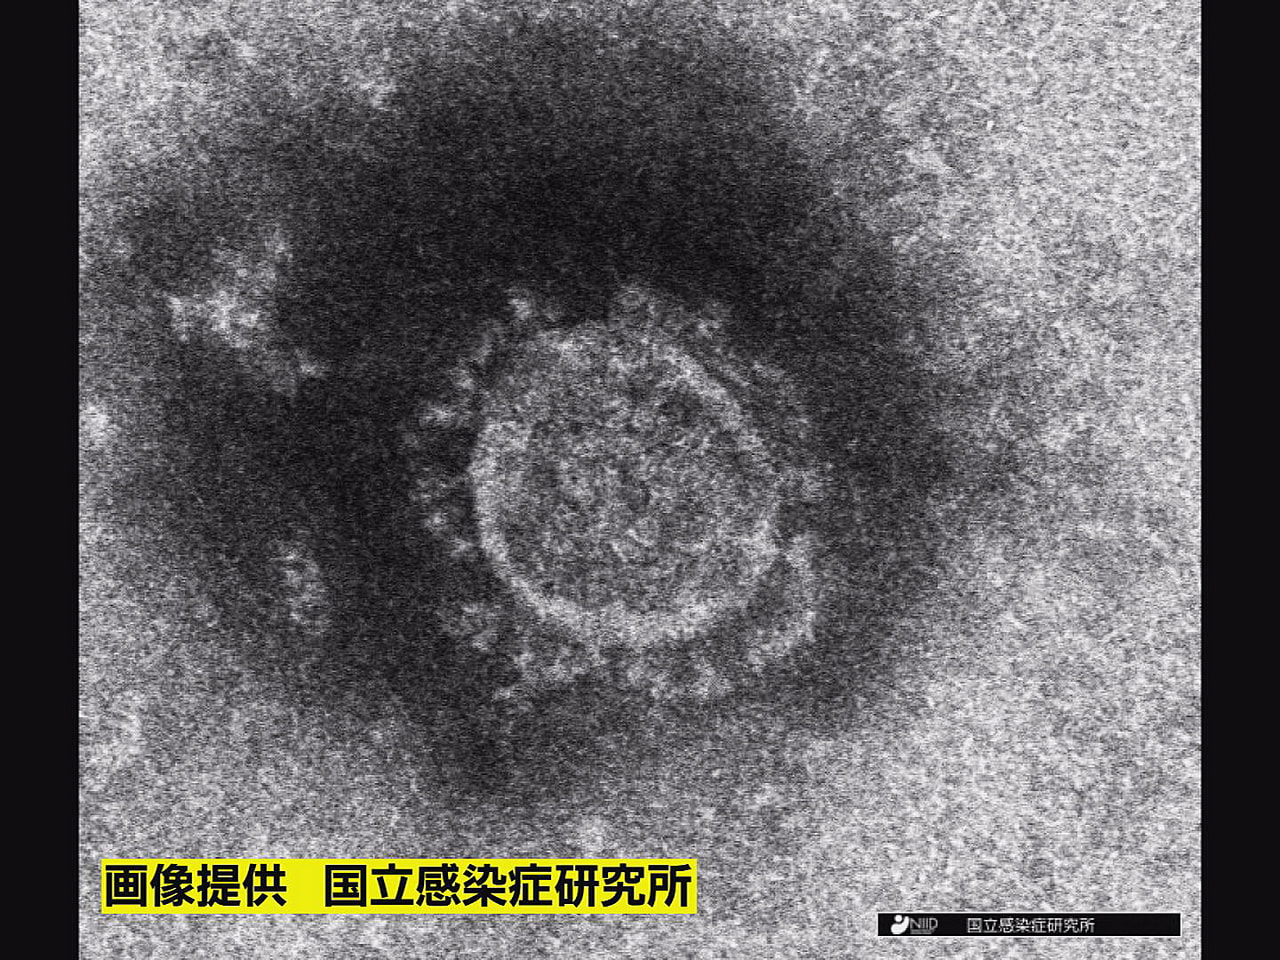 岐阜県は２３日、新型コロナウイルスの感染者が新たに２２２人確認されたと発表しまし...